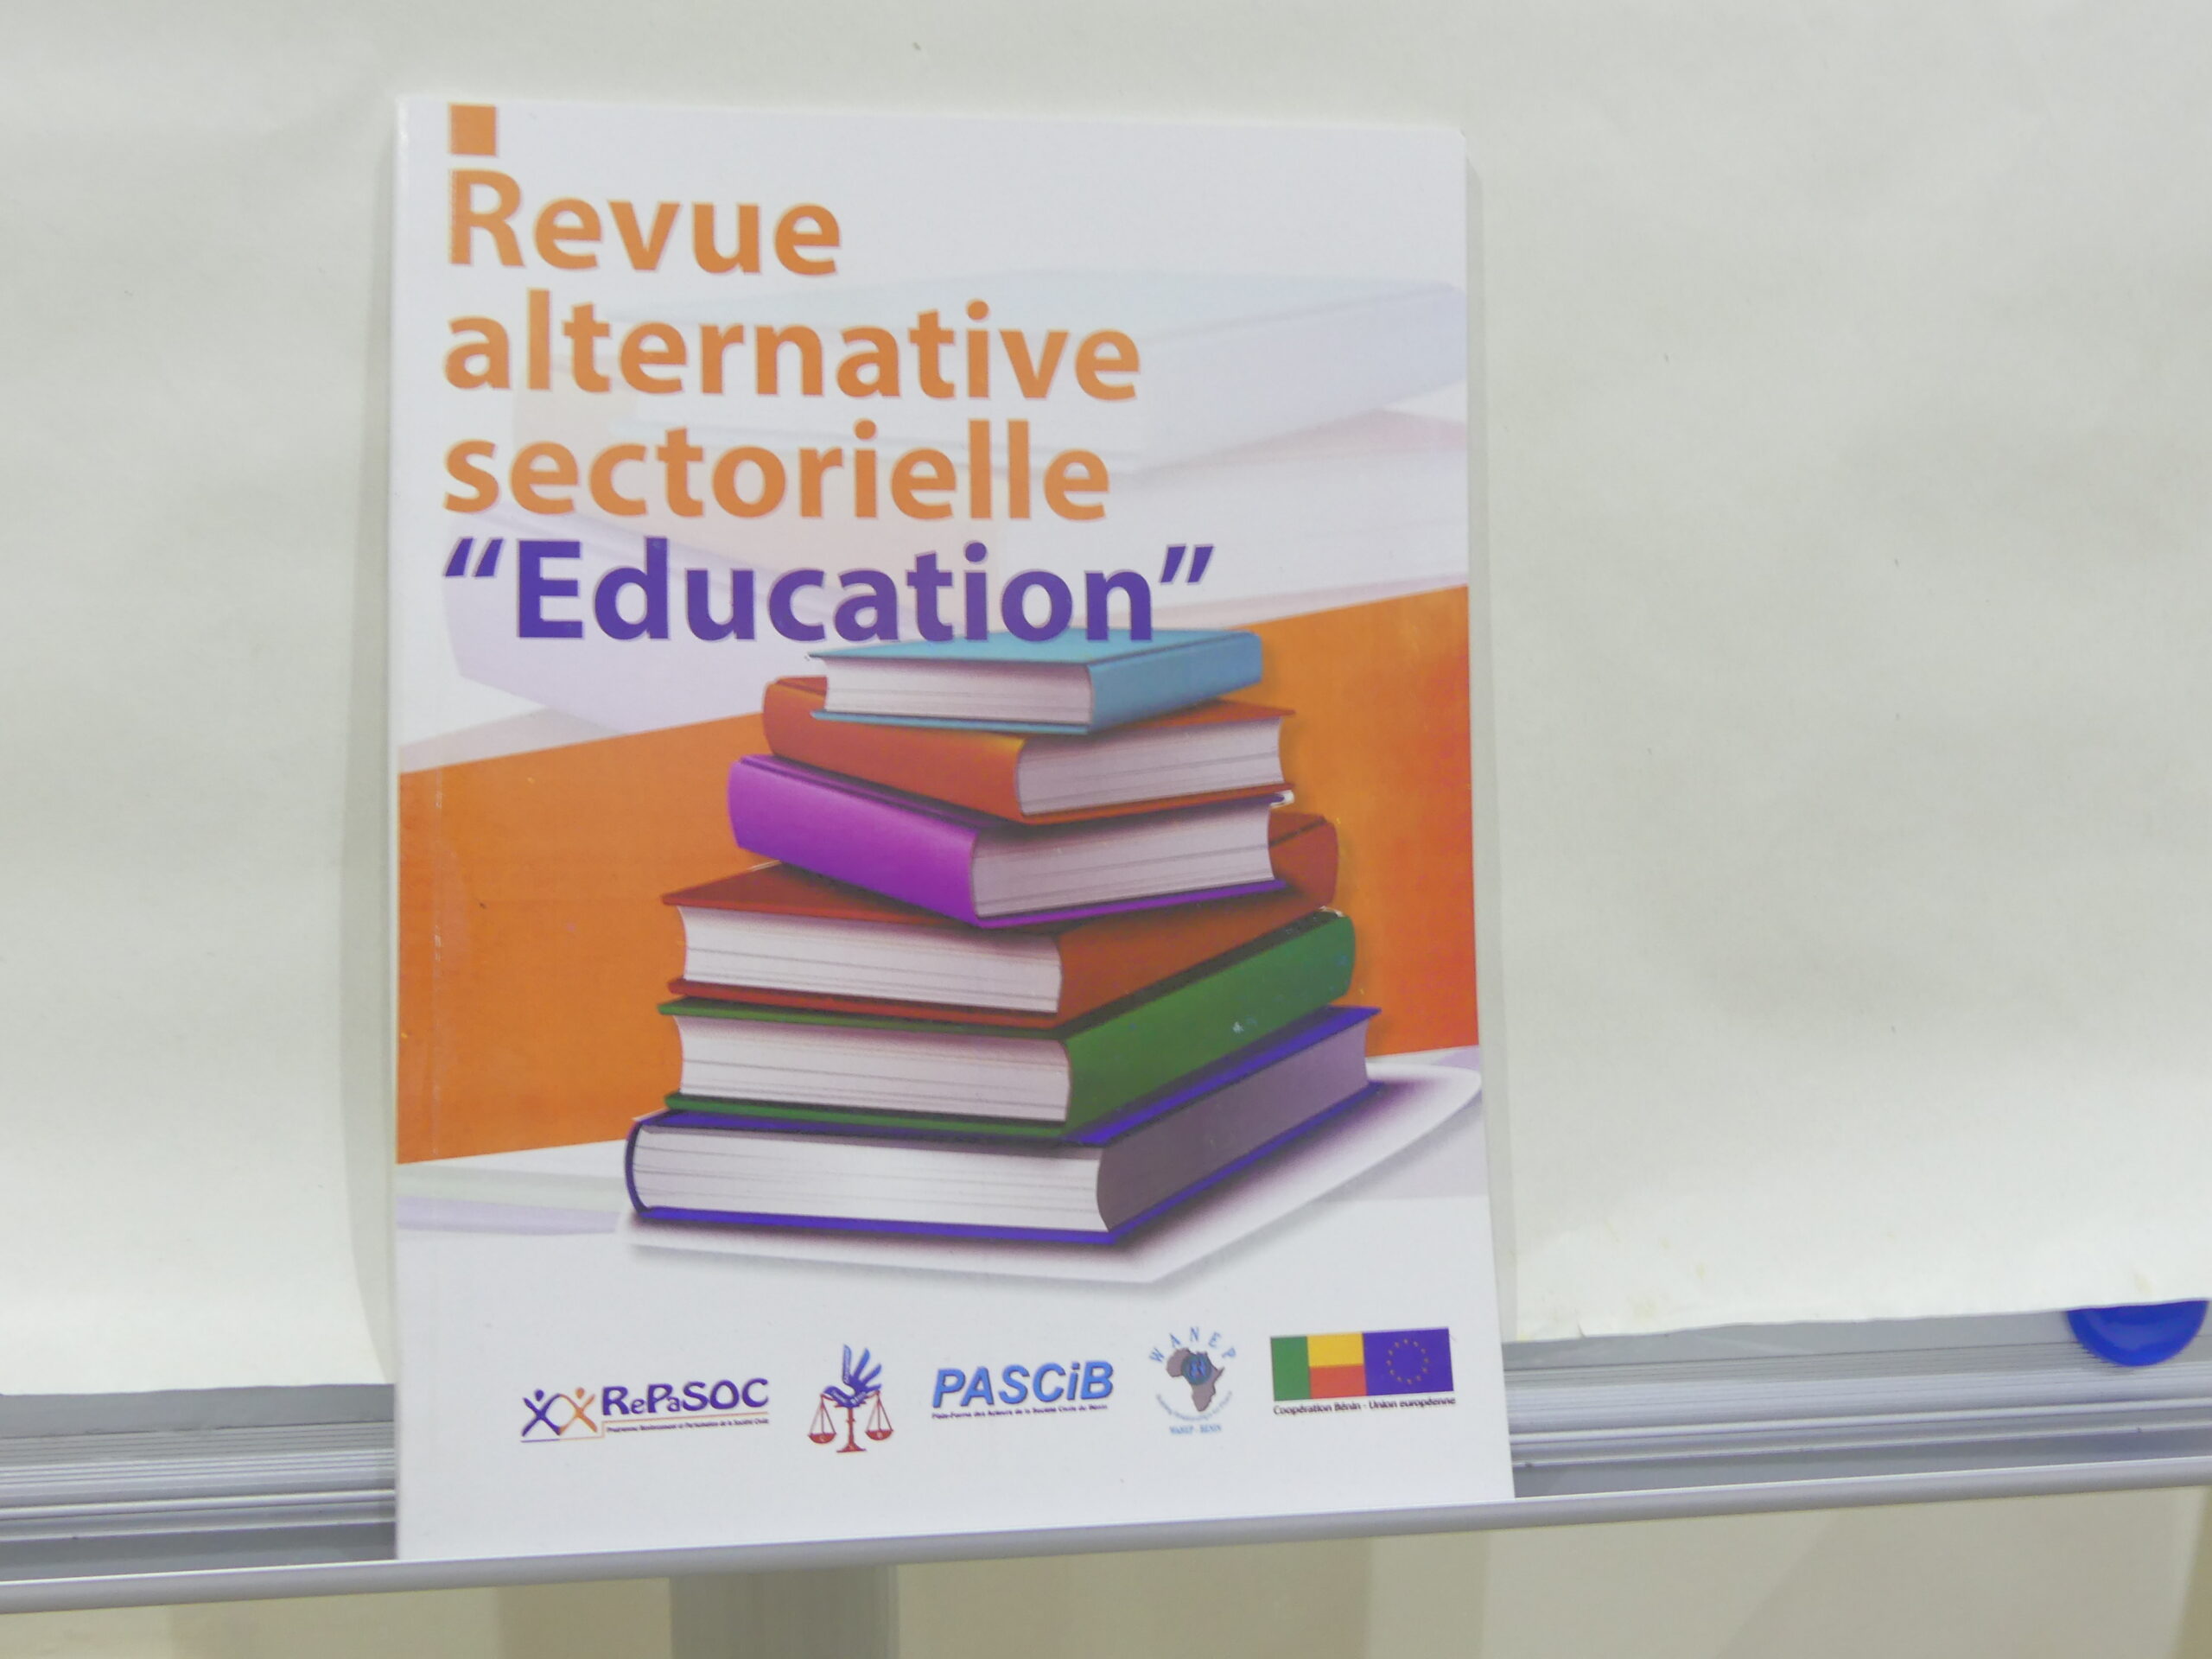 Revue alternative secteur Education